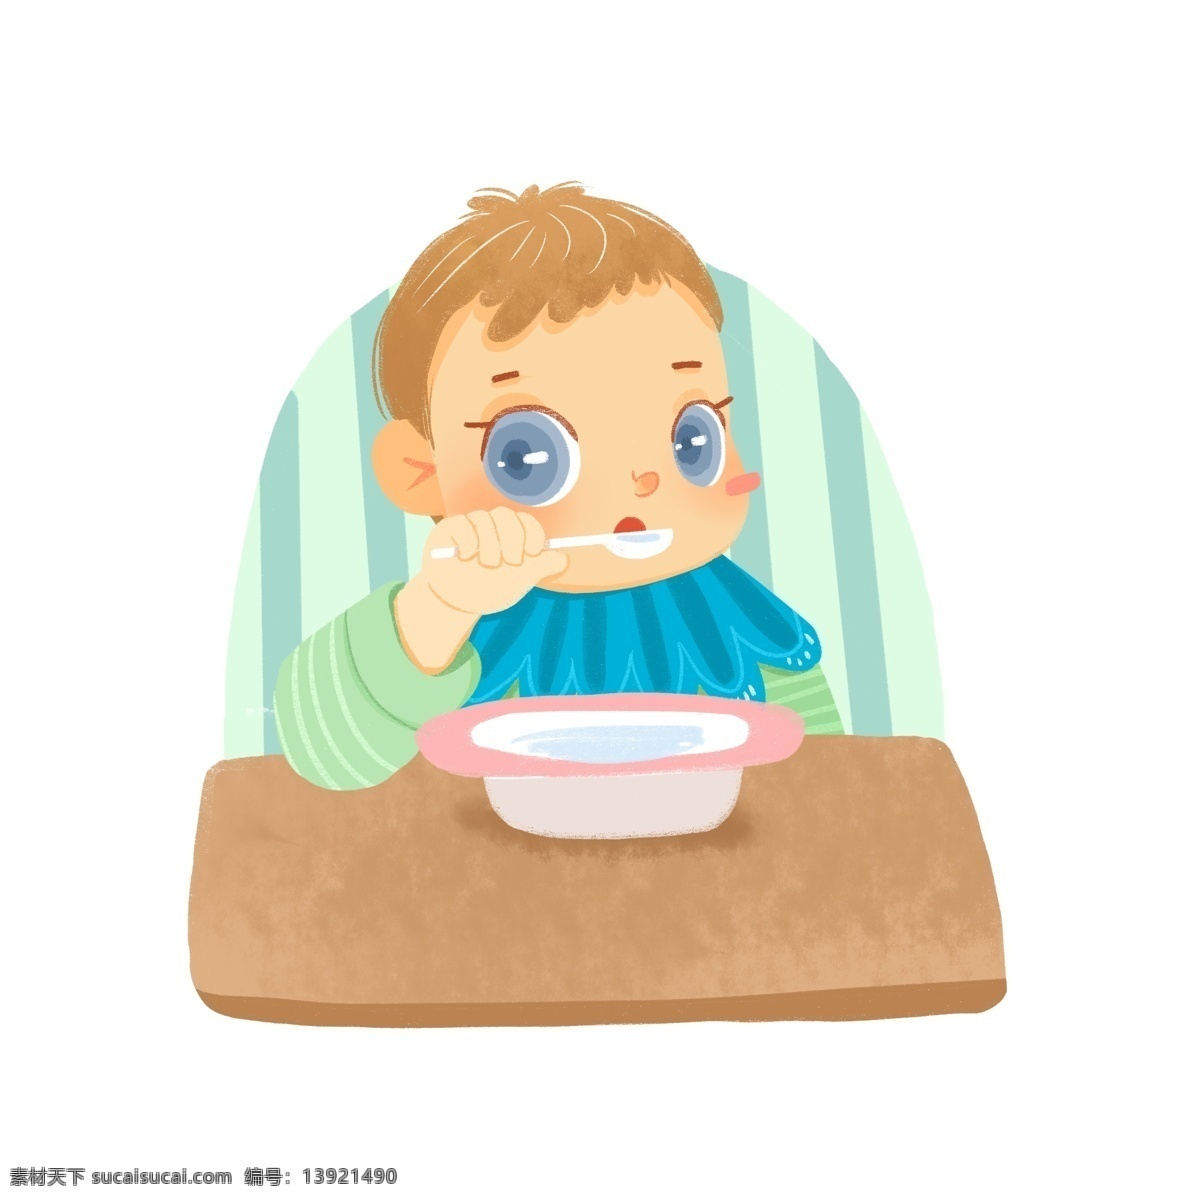 小 婴儿 自己 勺子 吃饭 小朋友 baby 小男孩 宝宝 宝贝 喝汤 宝宝椅 小饭桌 卡通 可爱 吃货 人物 大眼睛 蓝色 清新 绿色